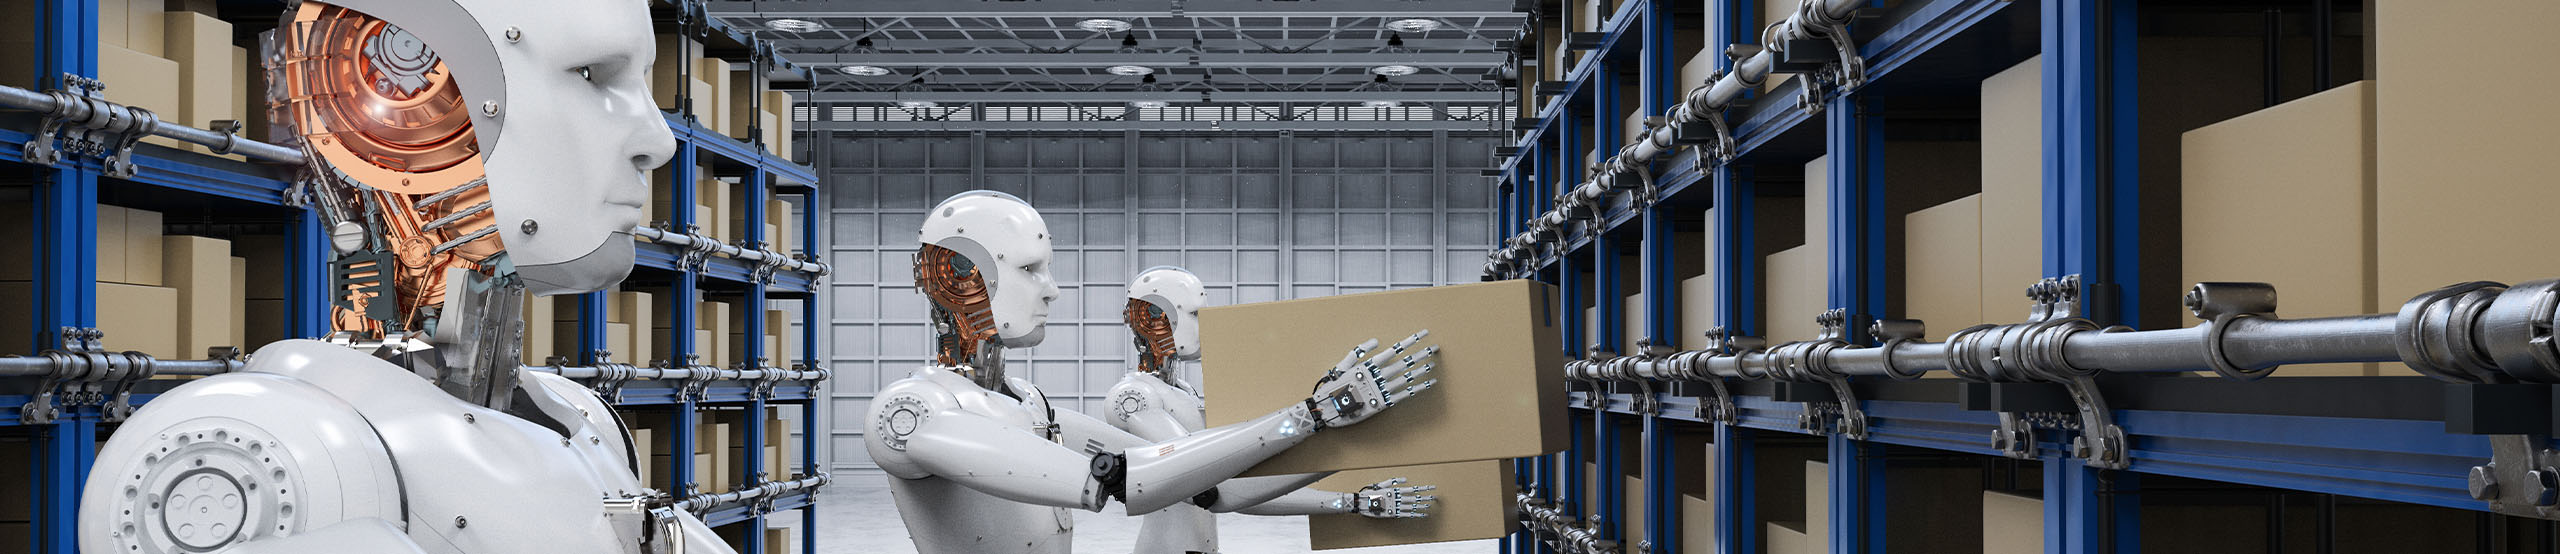 Robots Lifting Boxes | Naples Global Advisors, SEC Registered Investment Advisor